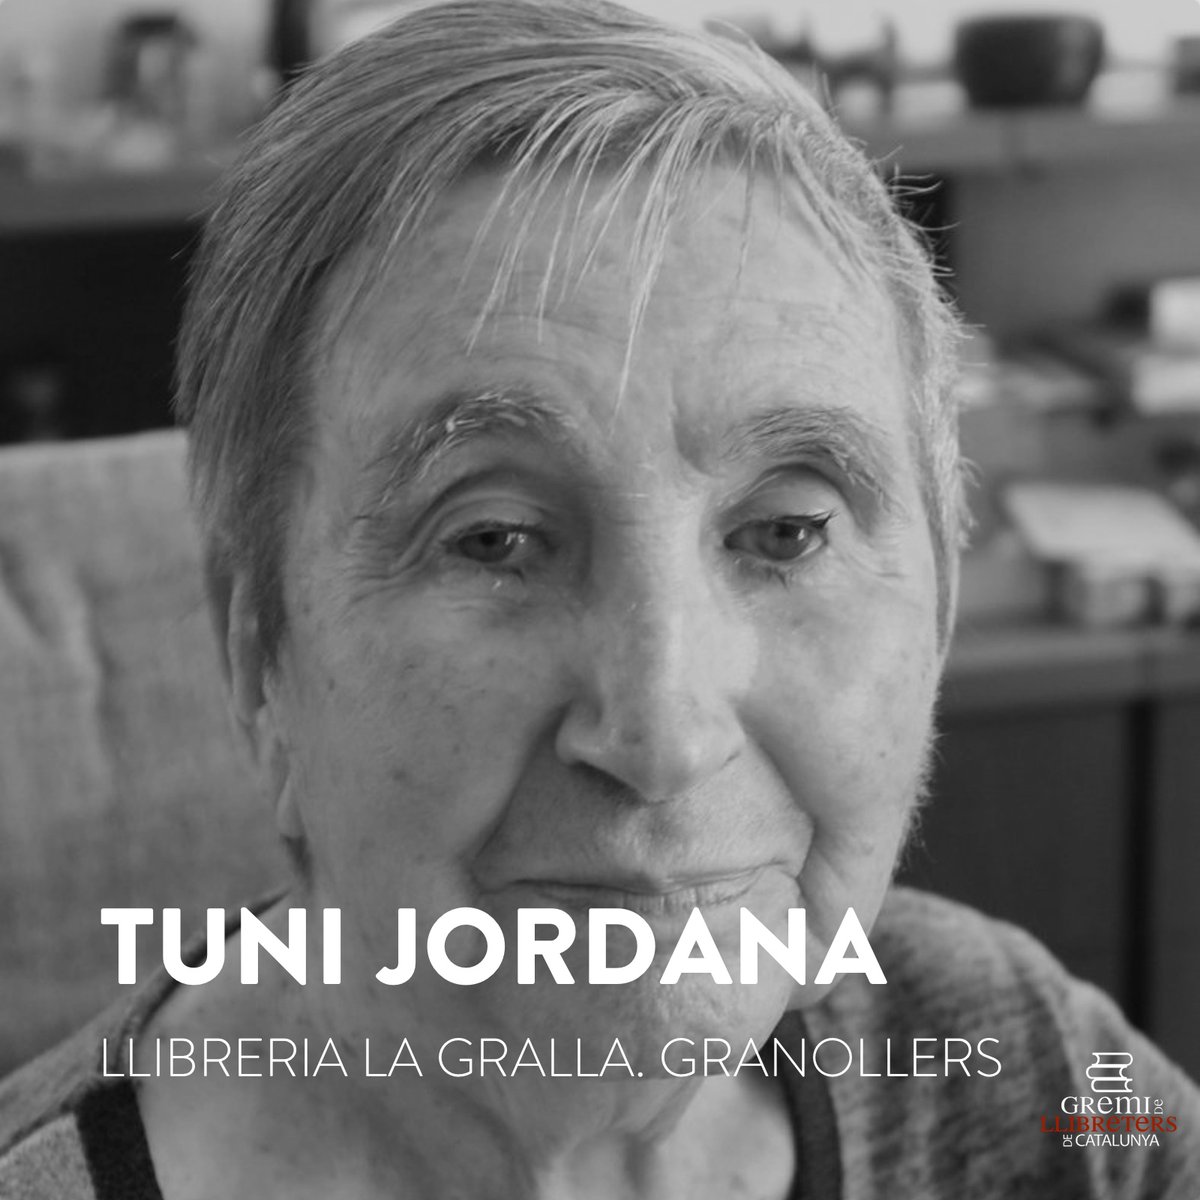 Des de @Llibreterscat volem donar el més sentit condol a la familia i amics de la llibretera Tuni Jordana, fundadora i sòcia de la llibreria @lgralla de #Granollers, que ens va deixar ahir. Descansi en pau. #llibreries #Catalunya